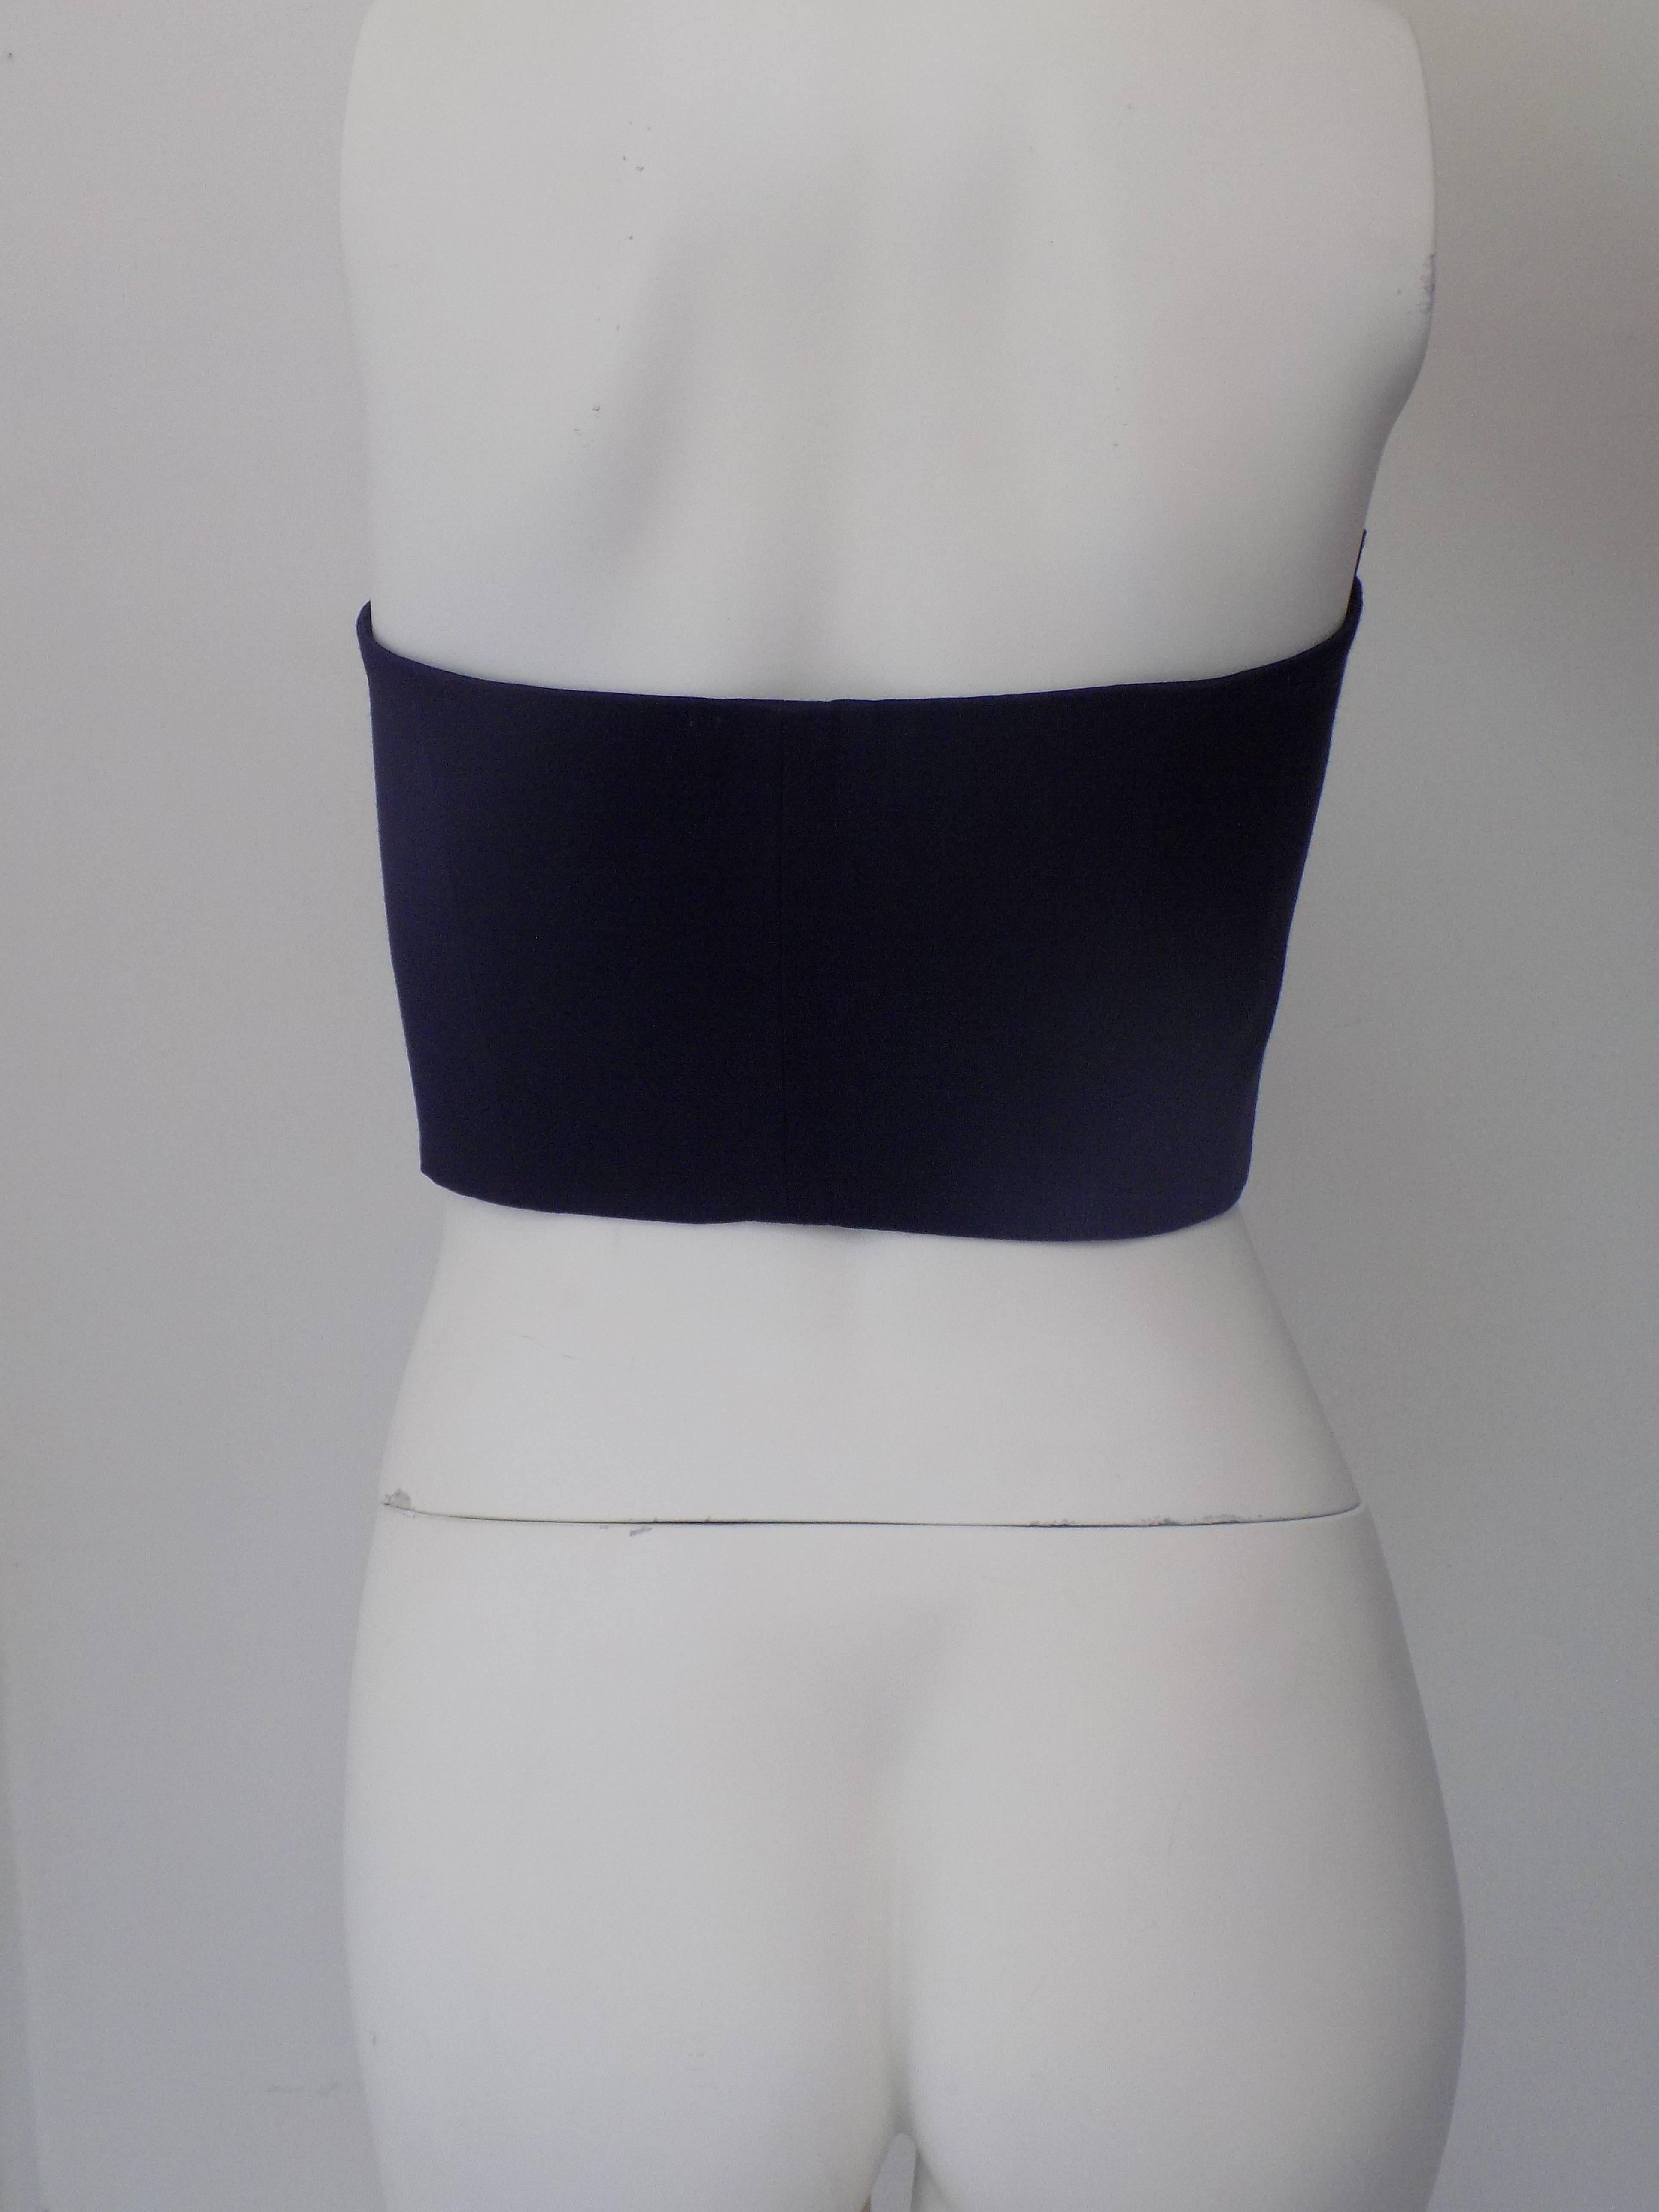 Ferretti Studio Dark blu corset In Excellent Condition For Sale In Capri, IT